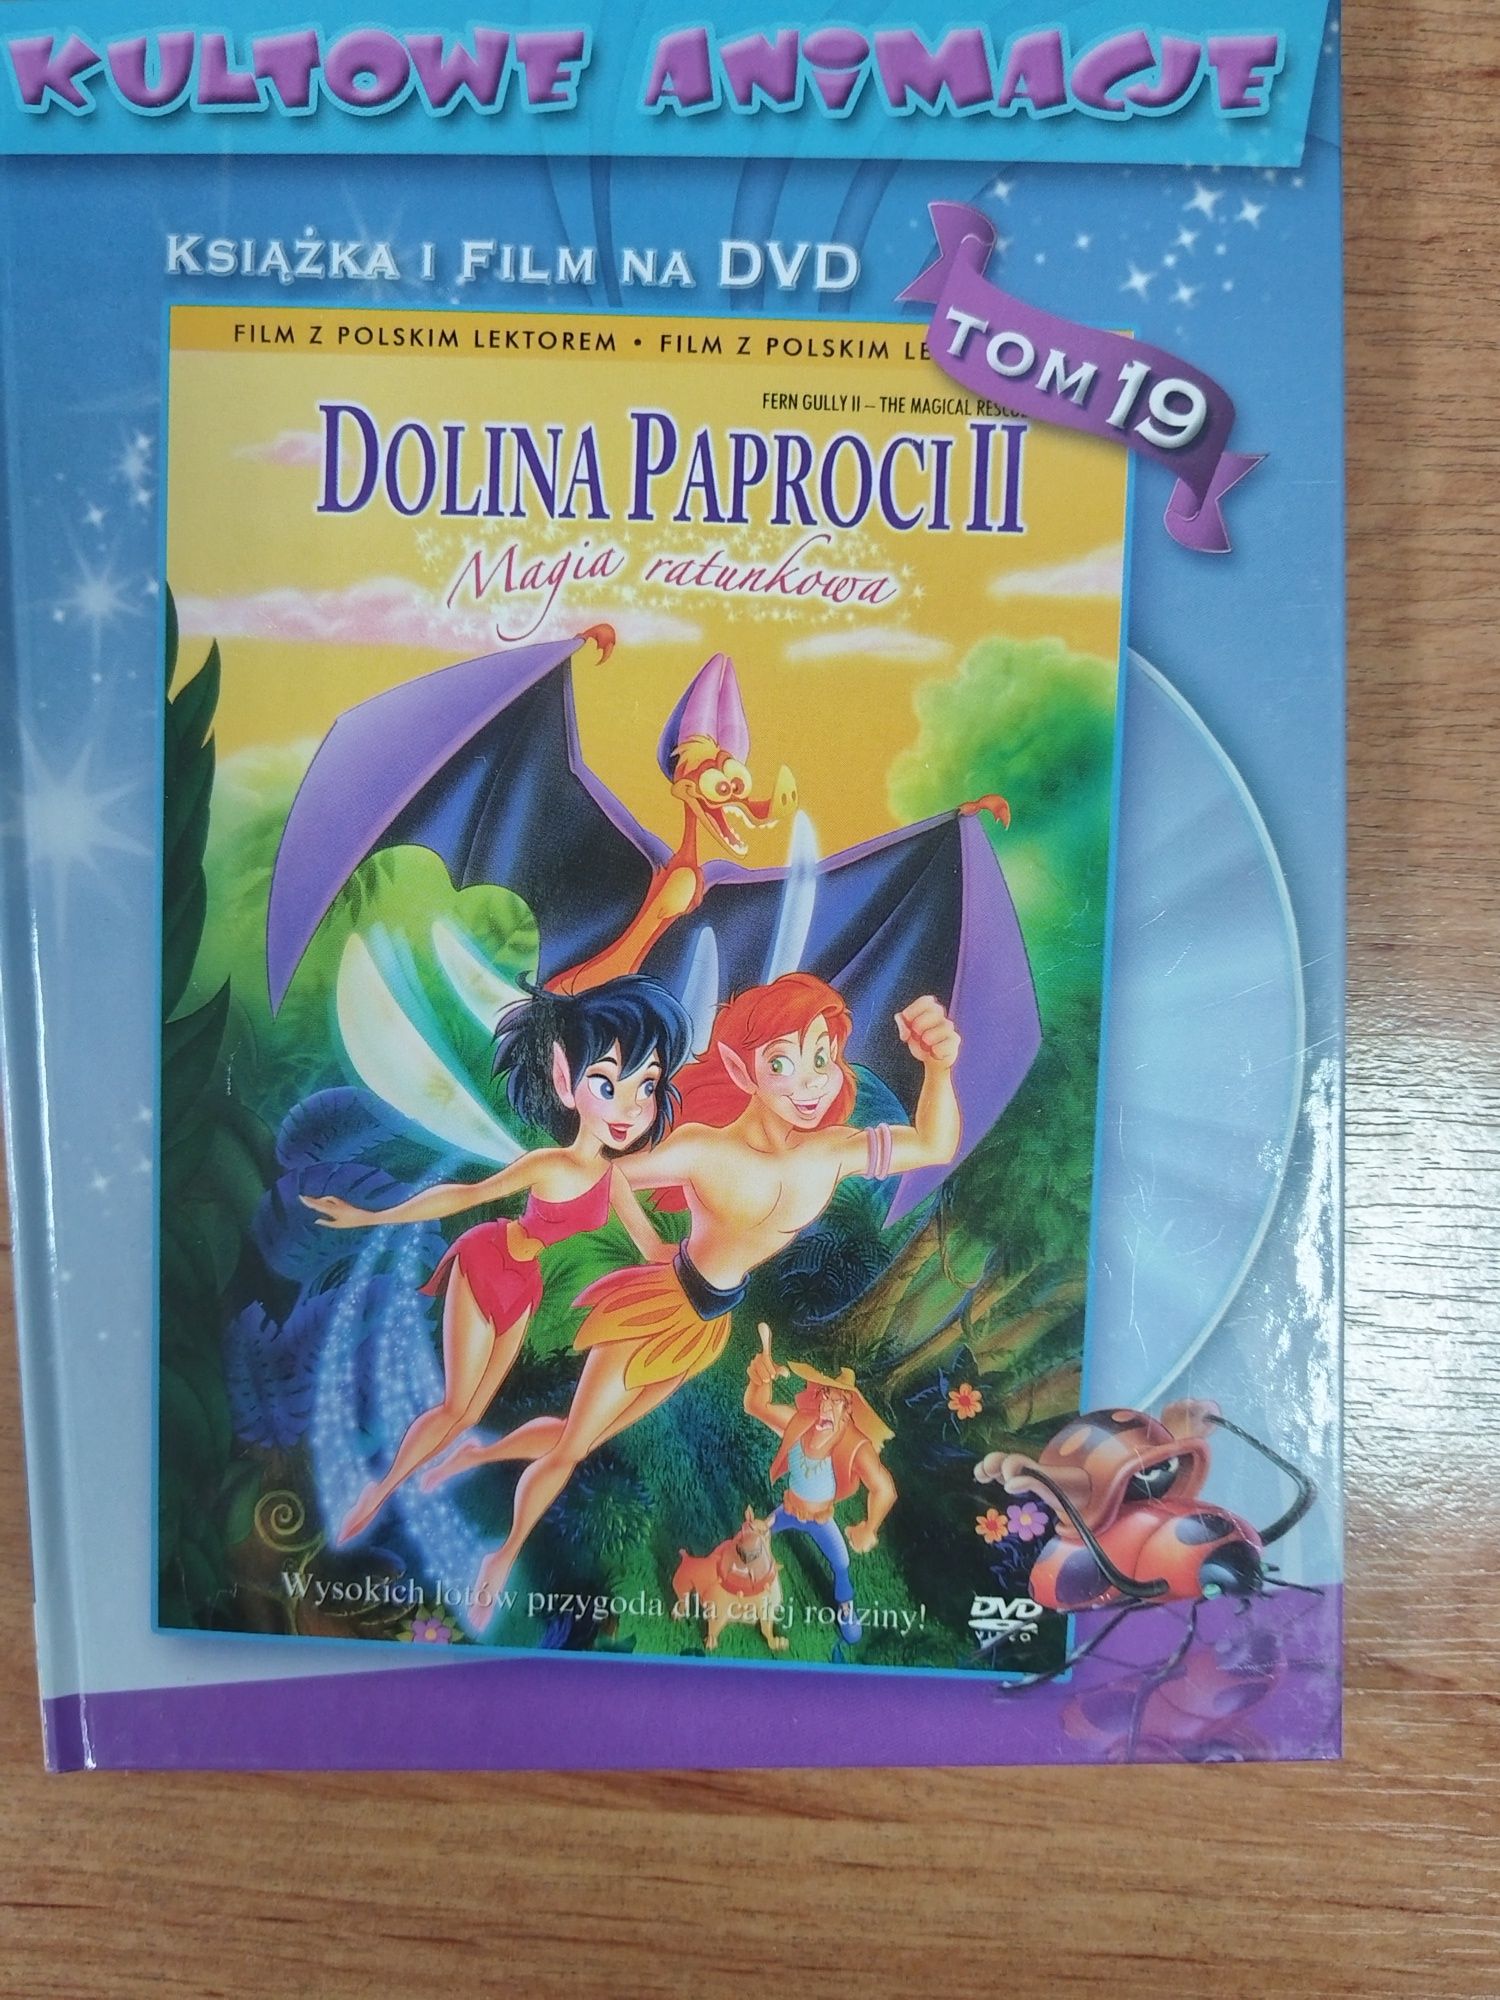 Film na DVD Dolina Paproci II